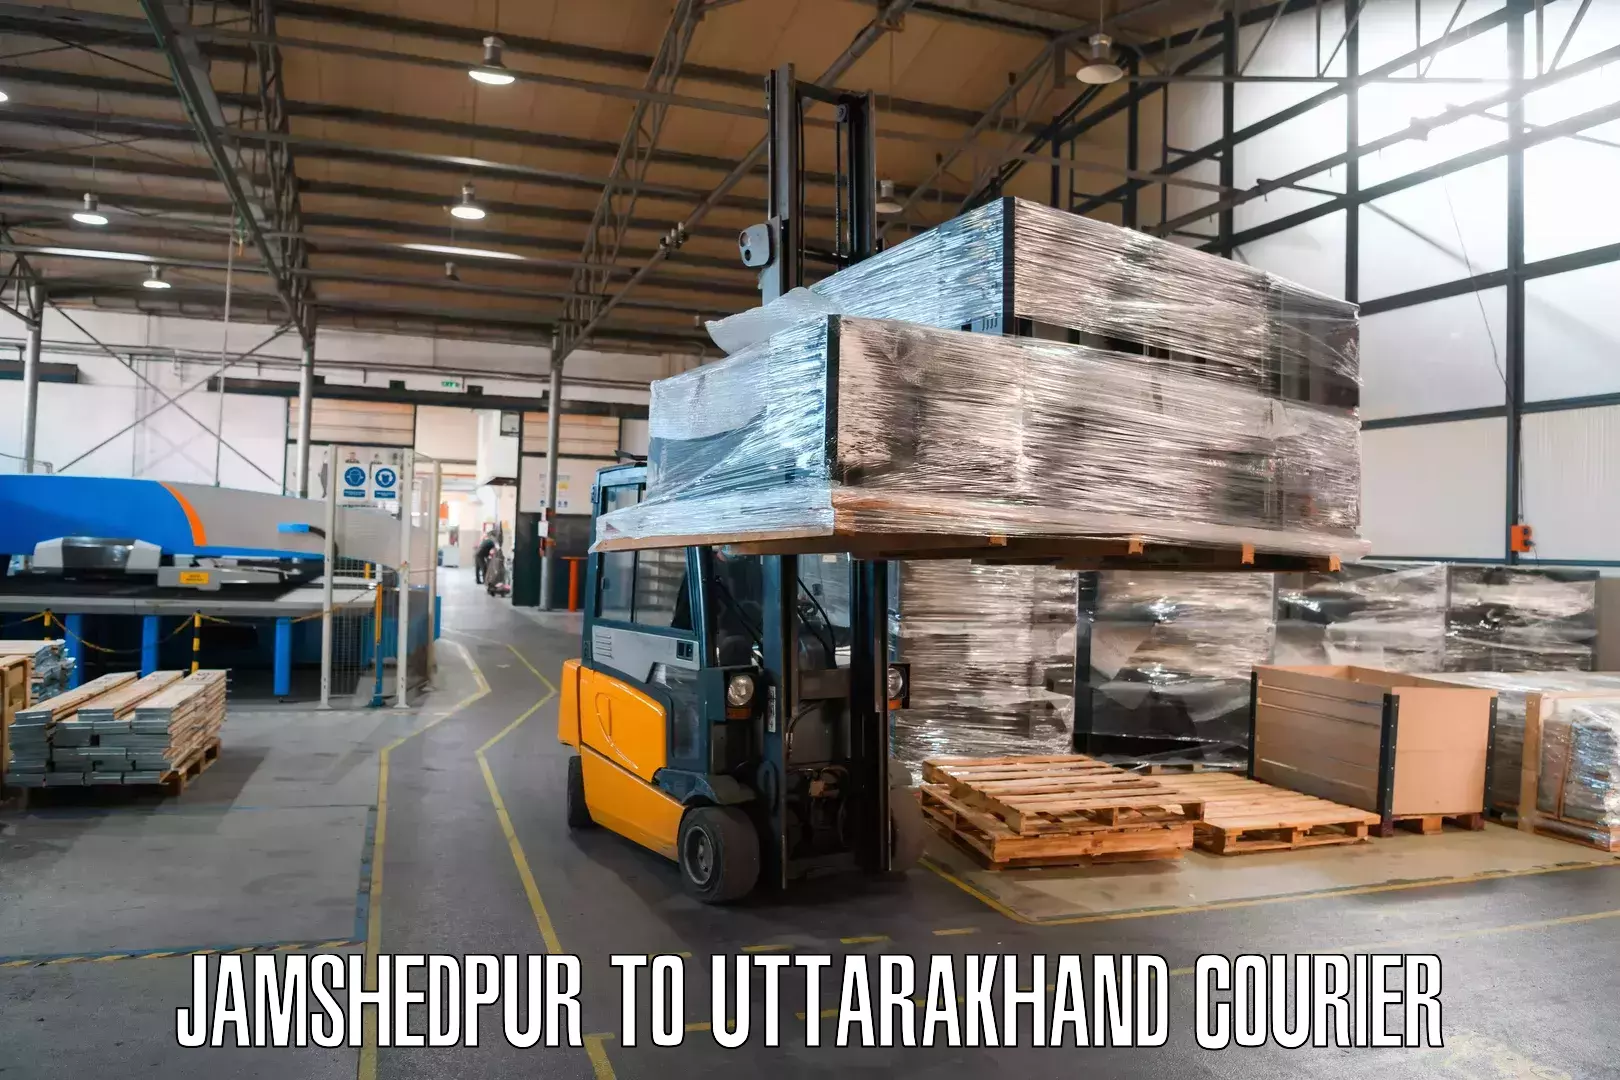 Advanced shipping technology Jamshedpur to Kotdwara